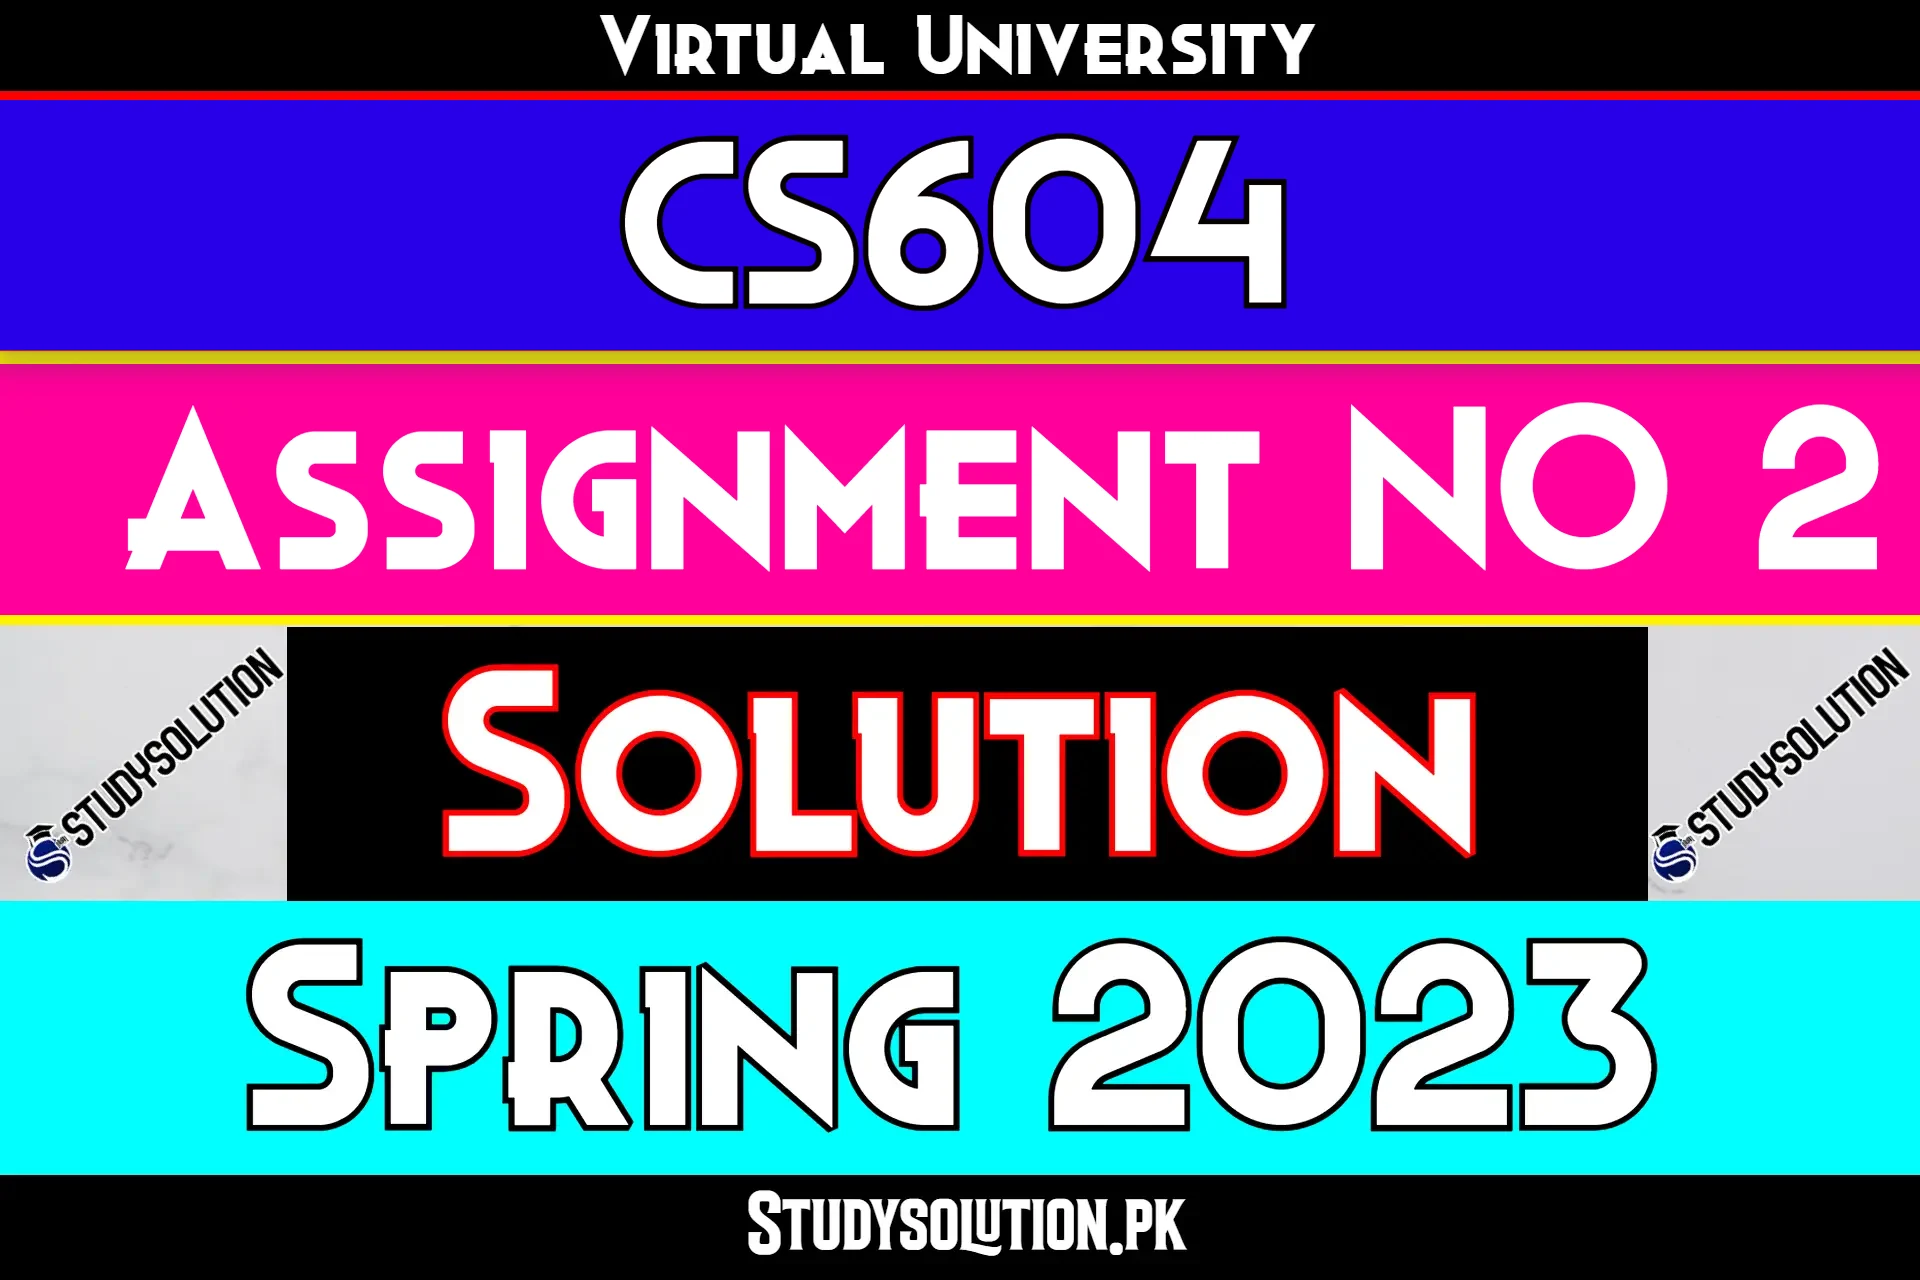 CS604 Assignment No 2 Solution Spring 2023